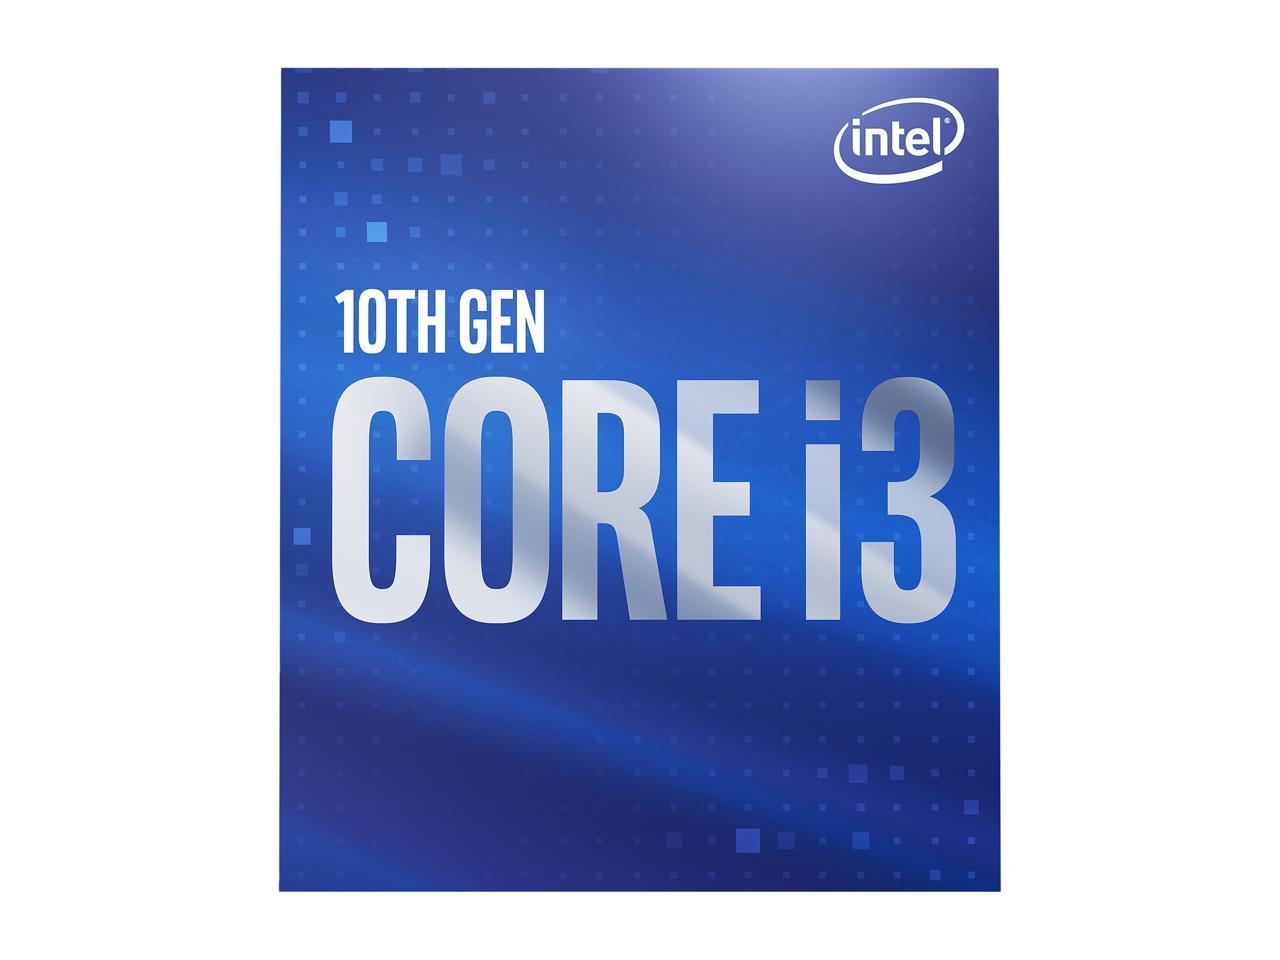 Intel Core i3-10100 Comet Lake Quad-Core 3.6 GHz LGA 1200 65W BX8070110100 Desktop Processor Intel UHD Graphics 630